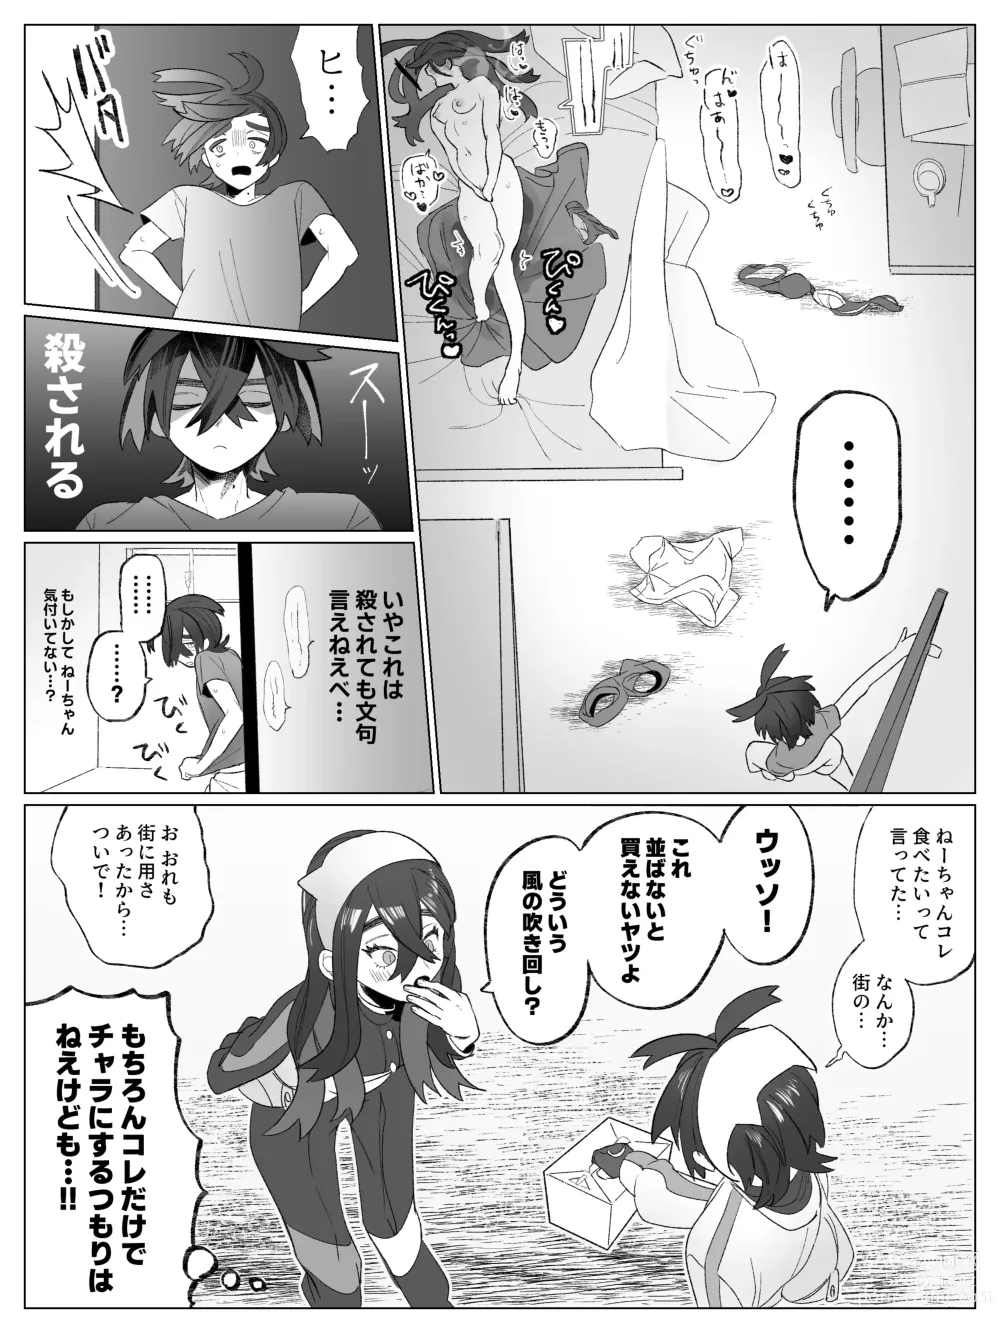 Page 4 of doujinshi Miuchi no Onanie Miru no wa Kitsui